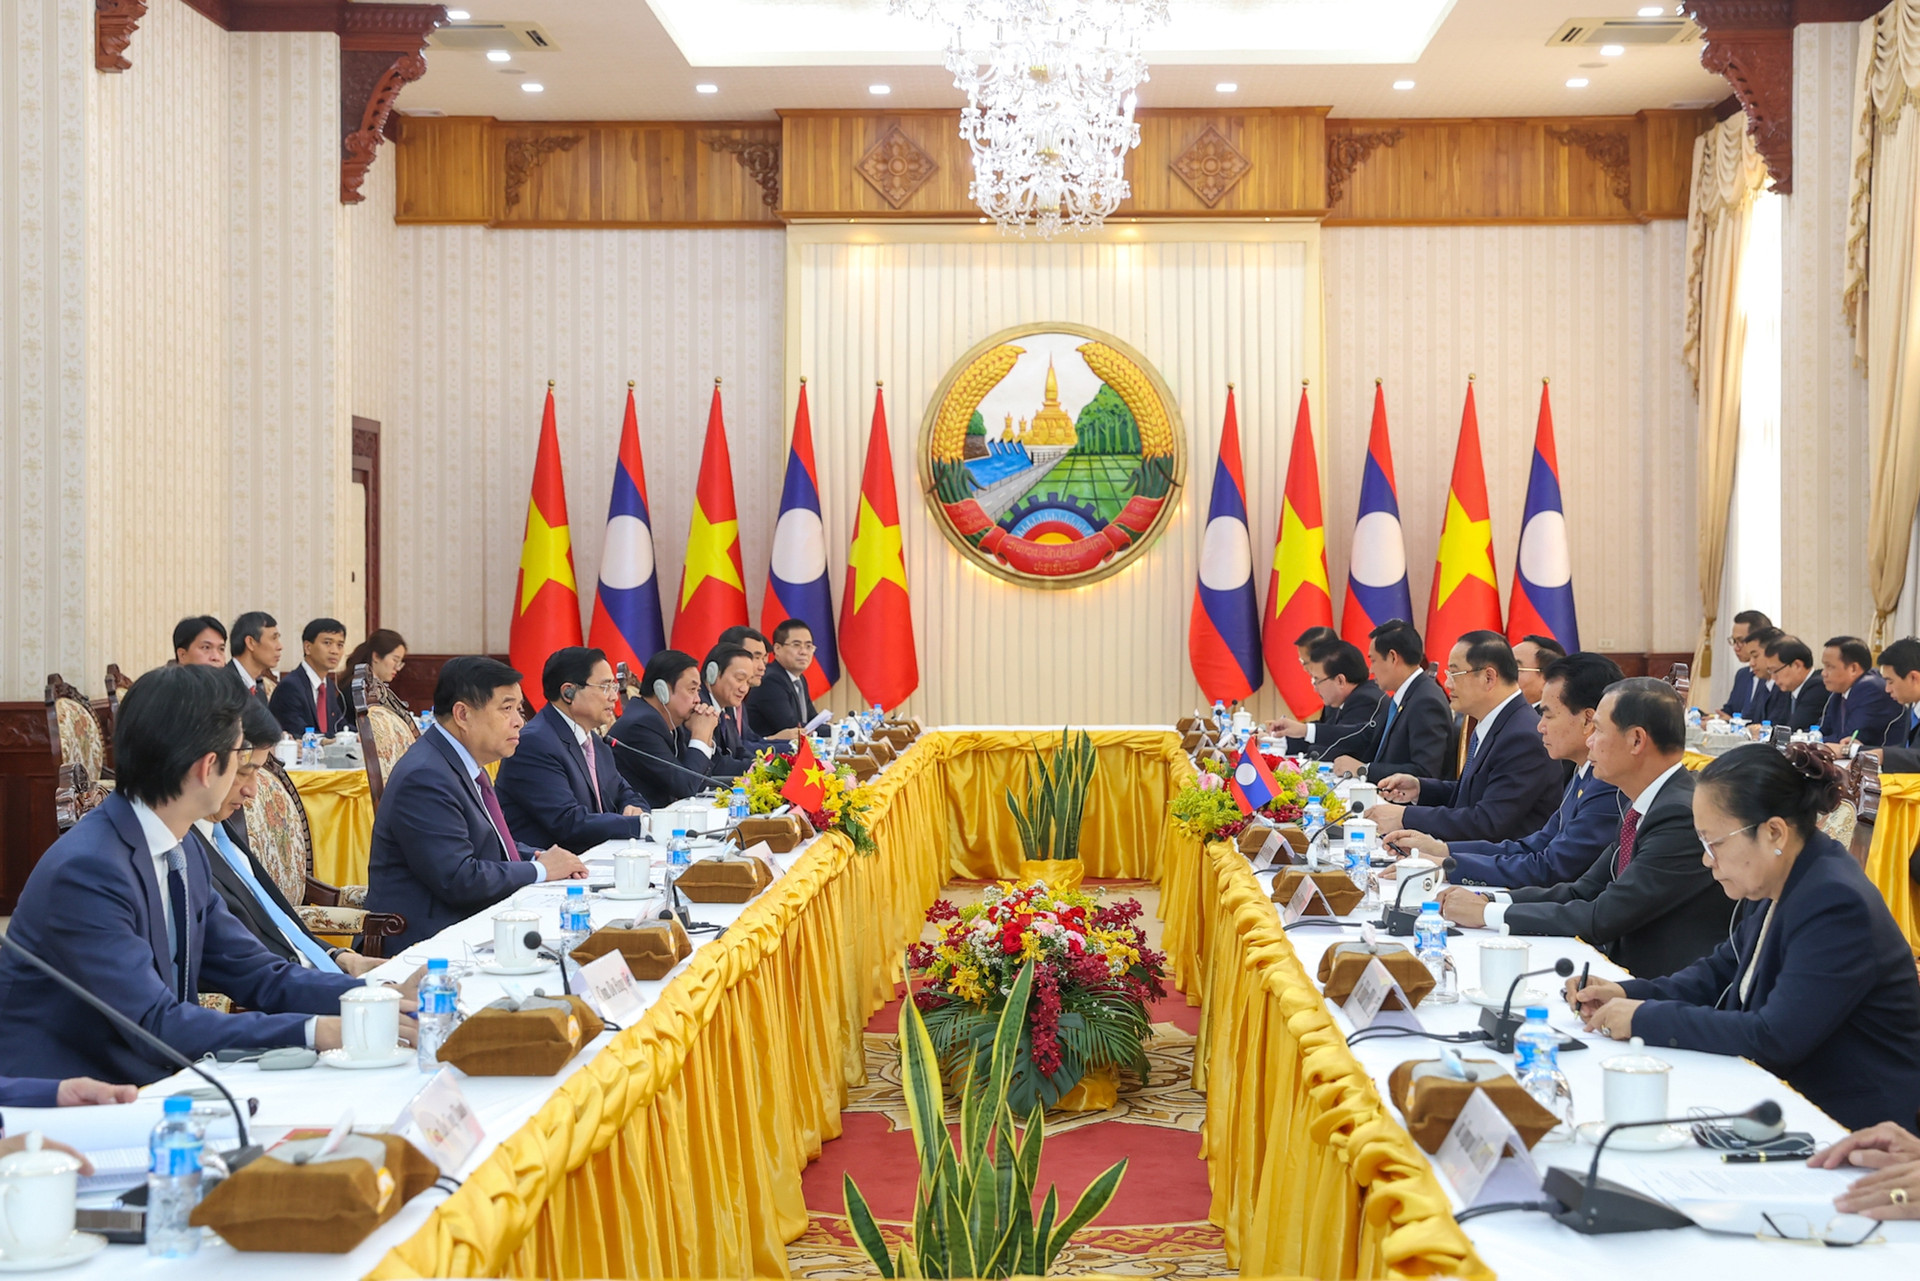 Khẳng định vị thế và trách nhiệm của Việt Nam trước những vấn đề của khu vực - Ảnh 11.